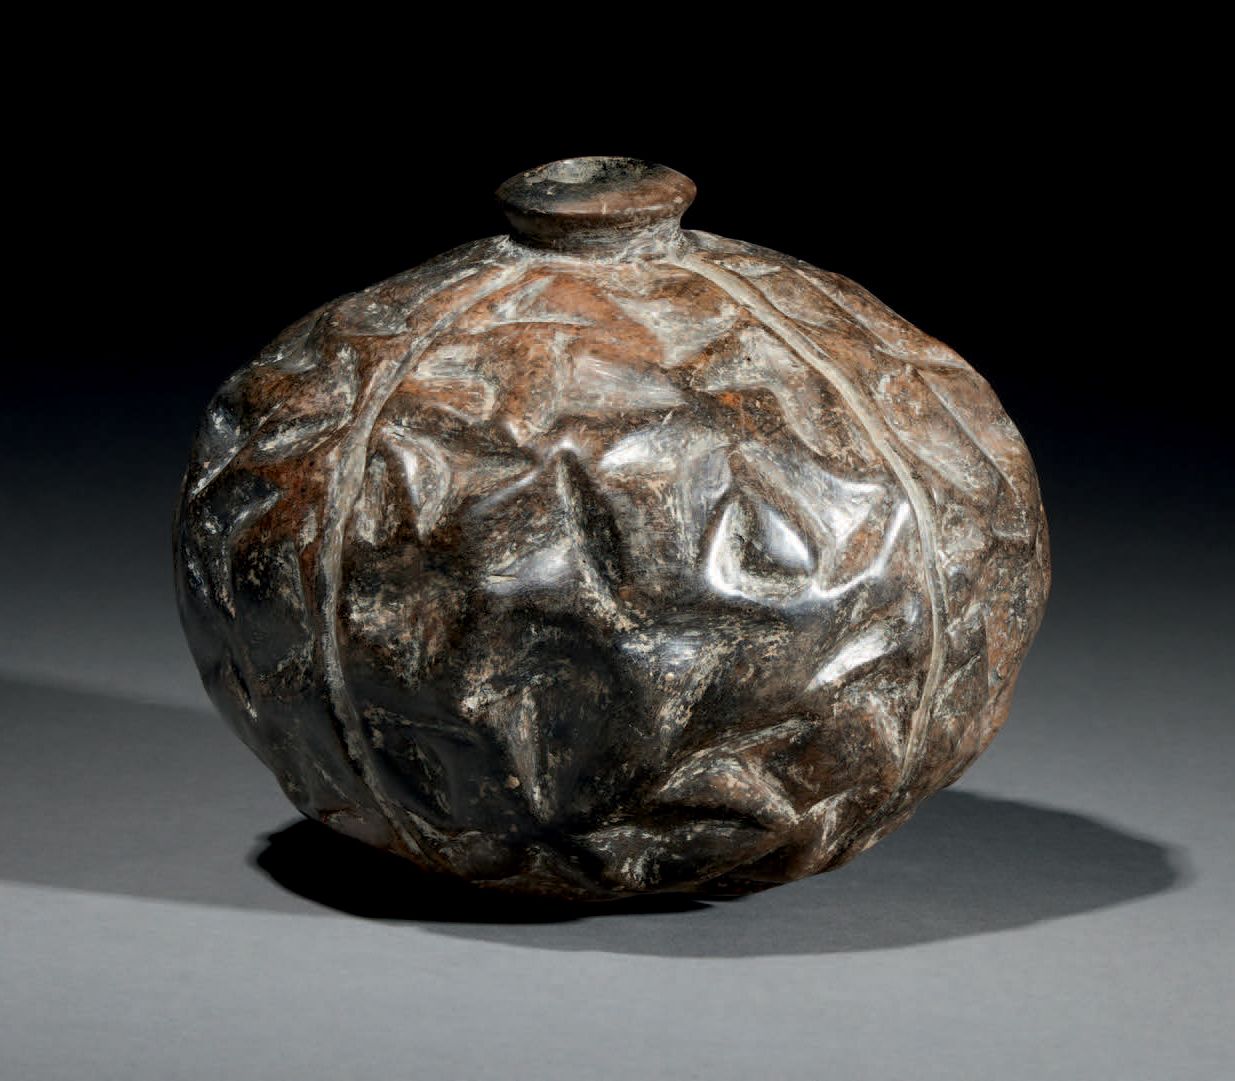 Null Ɵ 球形花瓶
CHORRERA文化，ECUADOR 公元前800-400年
陶瓷，深棕色滑石，可见石灰石沉积物 高13厘米-深15厘米
出处：
- 美&hellip;